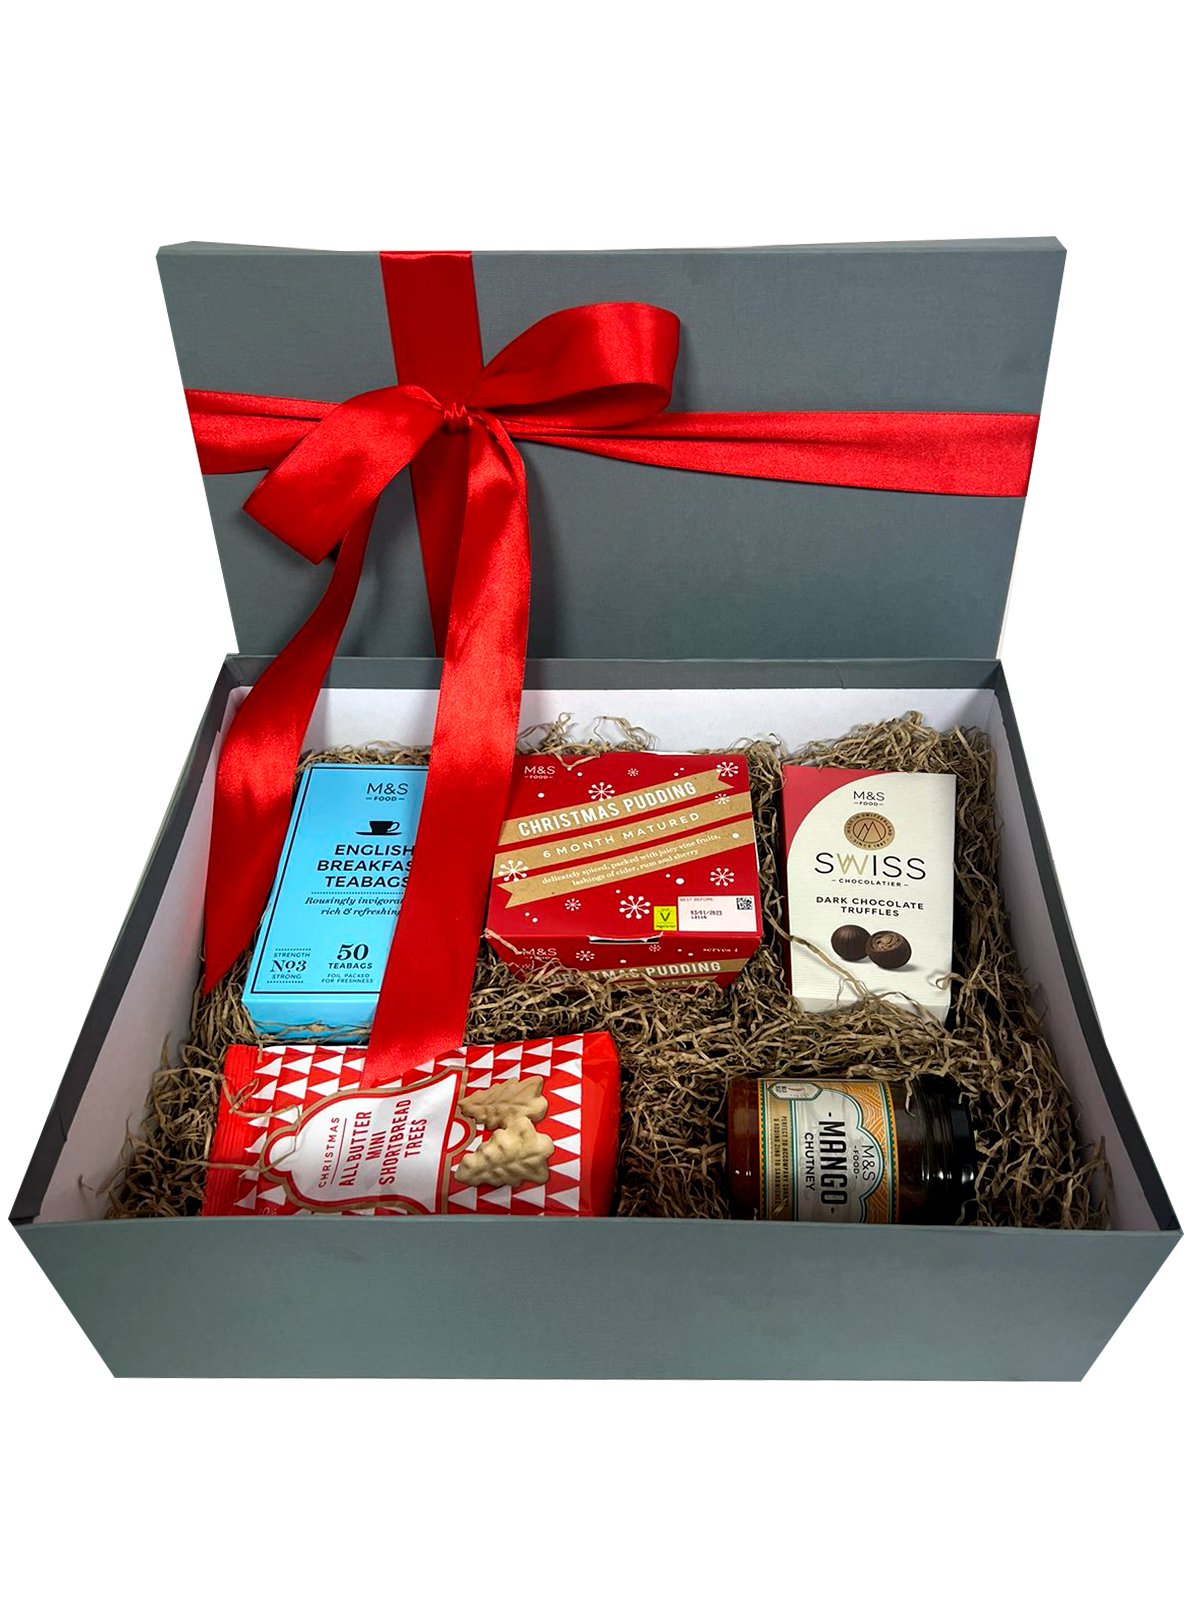 Εορταστικό Κουτί Δώρου με Επιλεγμένα Χριστουγεννιάτικα Προϊόντα Marks & Spencer